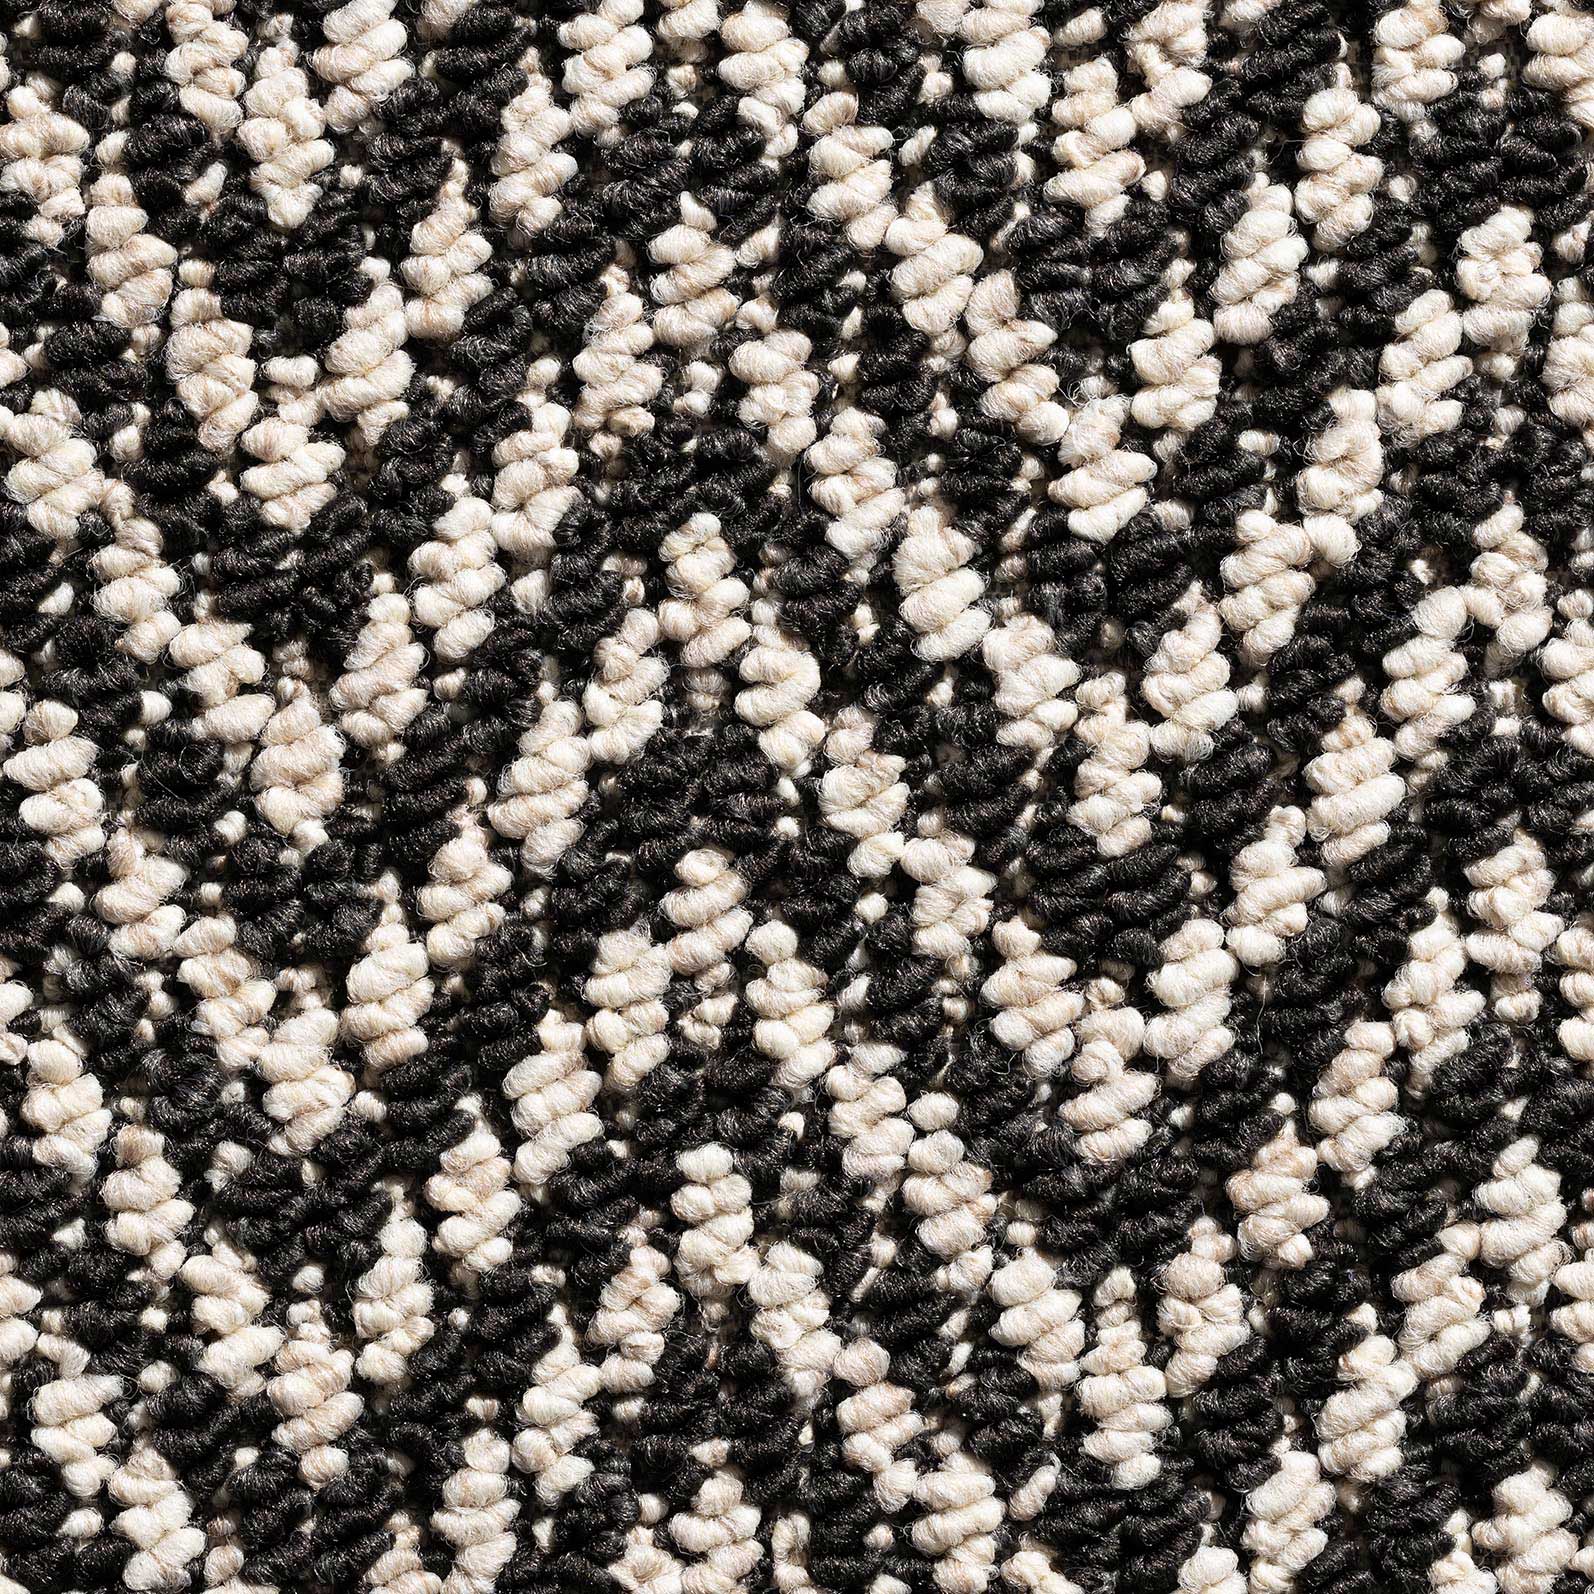 Aztec Herringbone Carpet - Black & White 3128